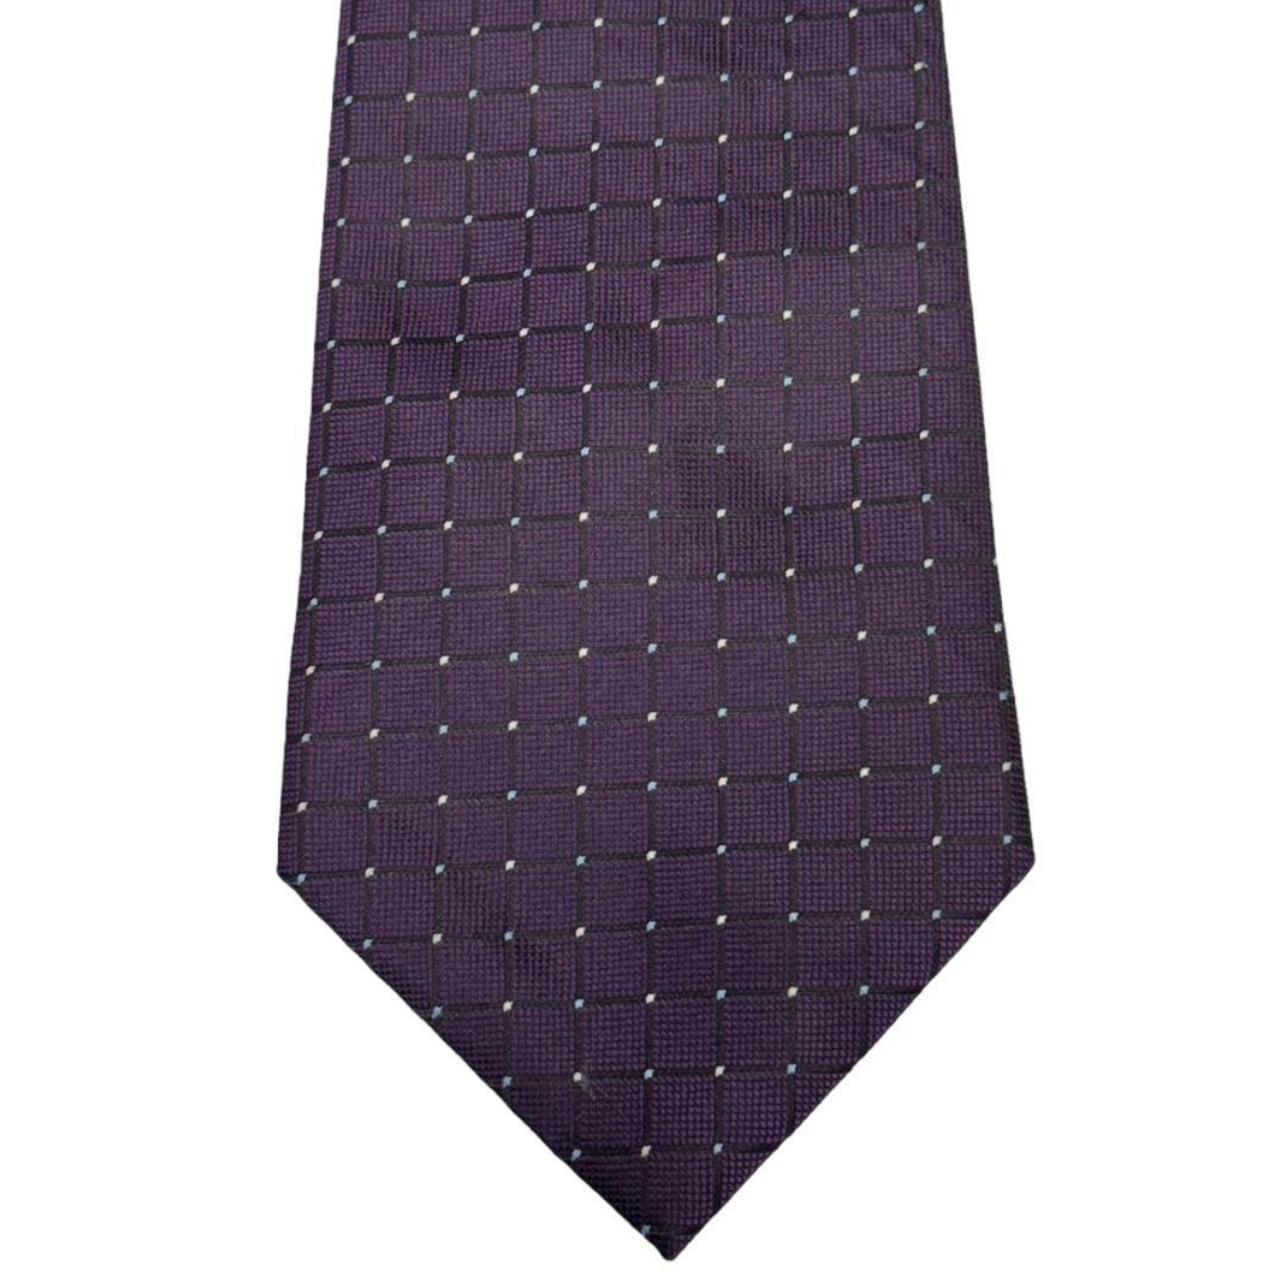 GIORGIO ARMANI Purple Check 100% Silk Tie Made In... - Depop